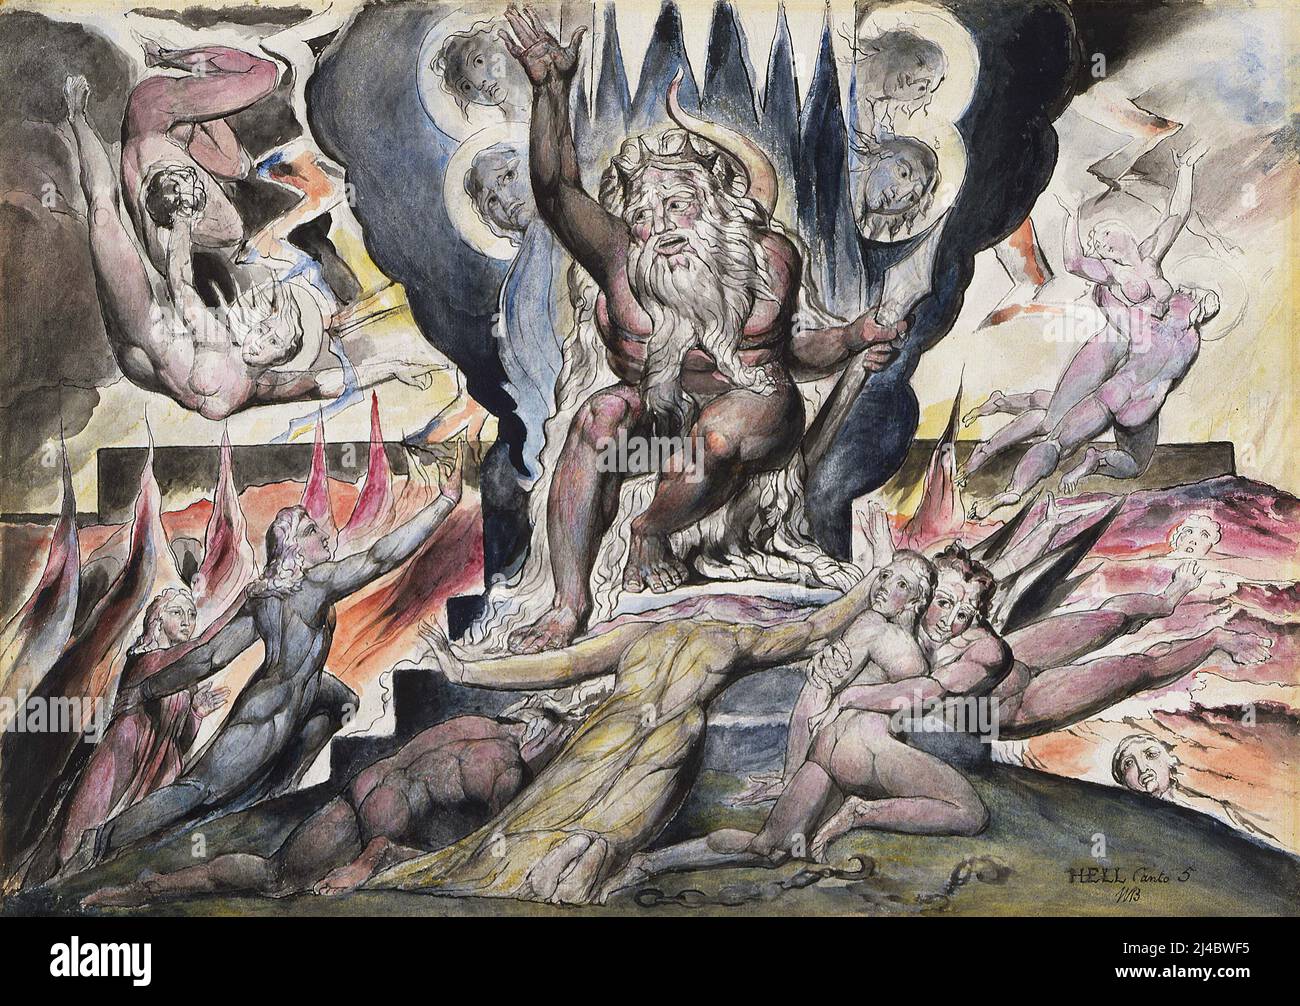 Minos raffigurato dall'artista britannico romantico William Blake come parte delle sue illustrazioni della Divina Commedia di Dante. Foto Stock